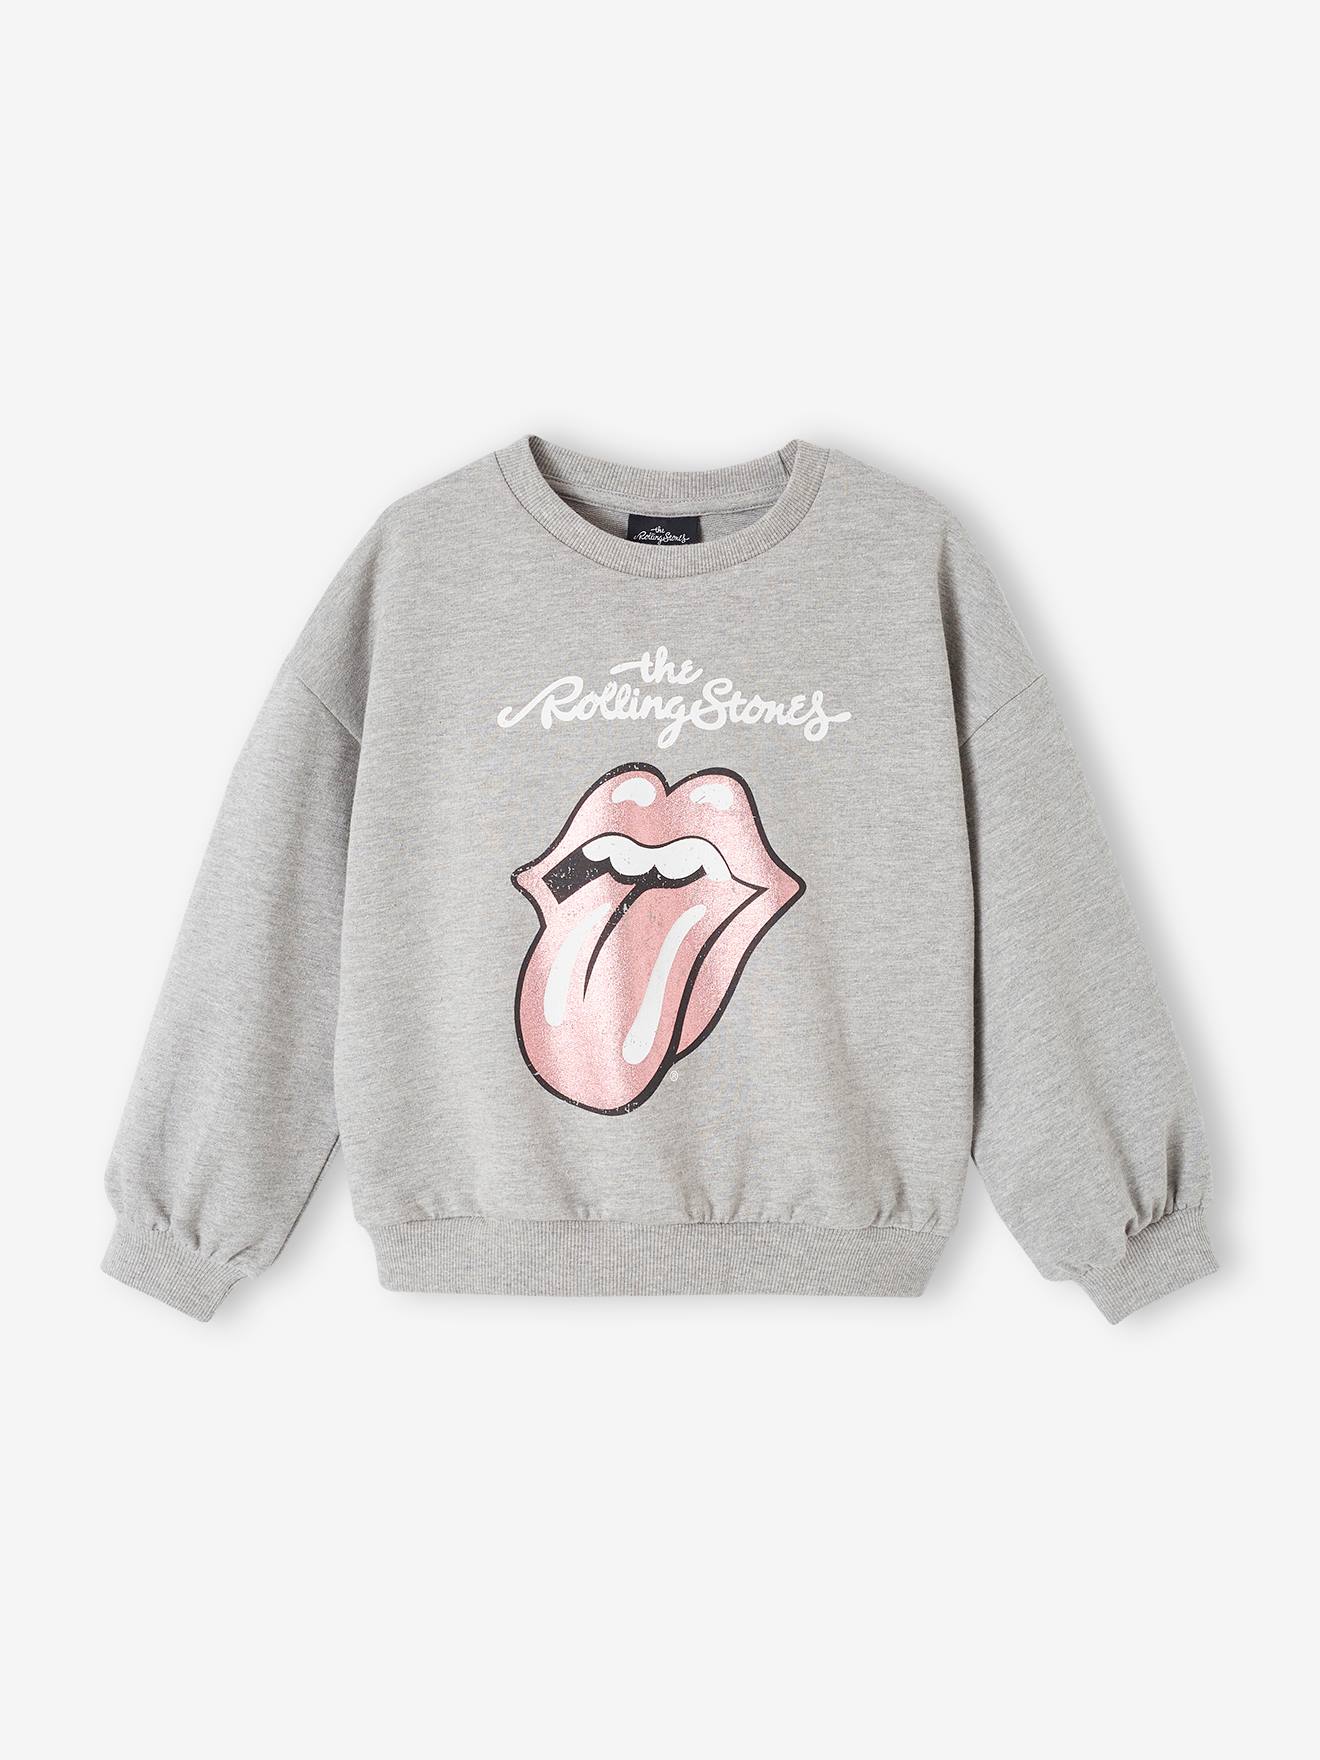 Kinder Sweatshirt The Rolling Stones von Rolling Stones